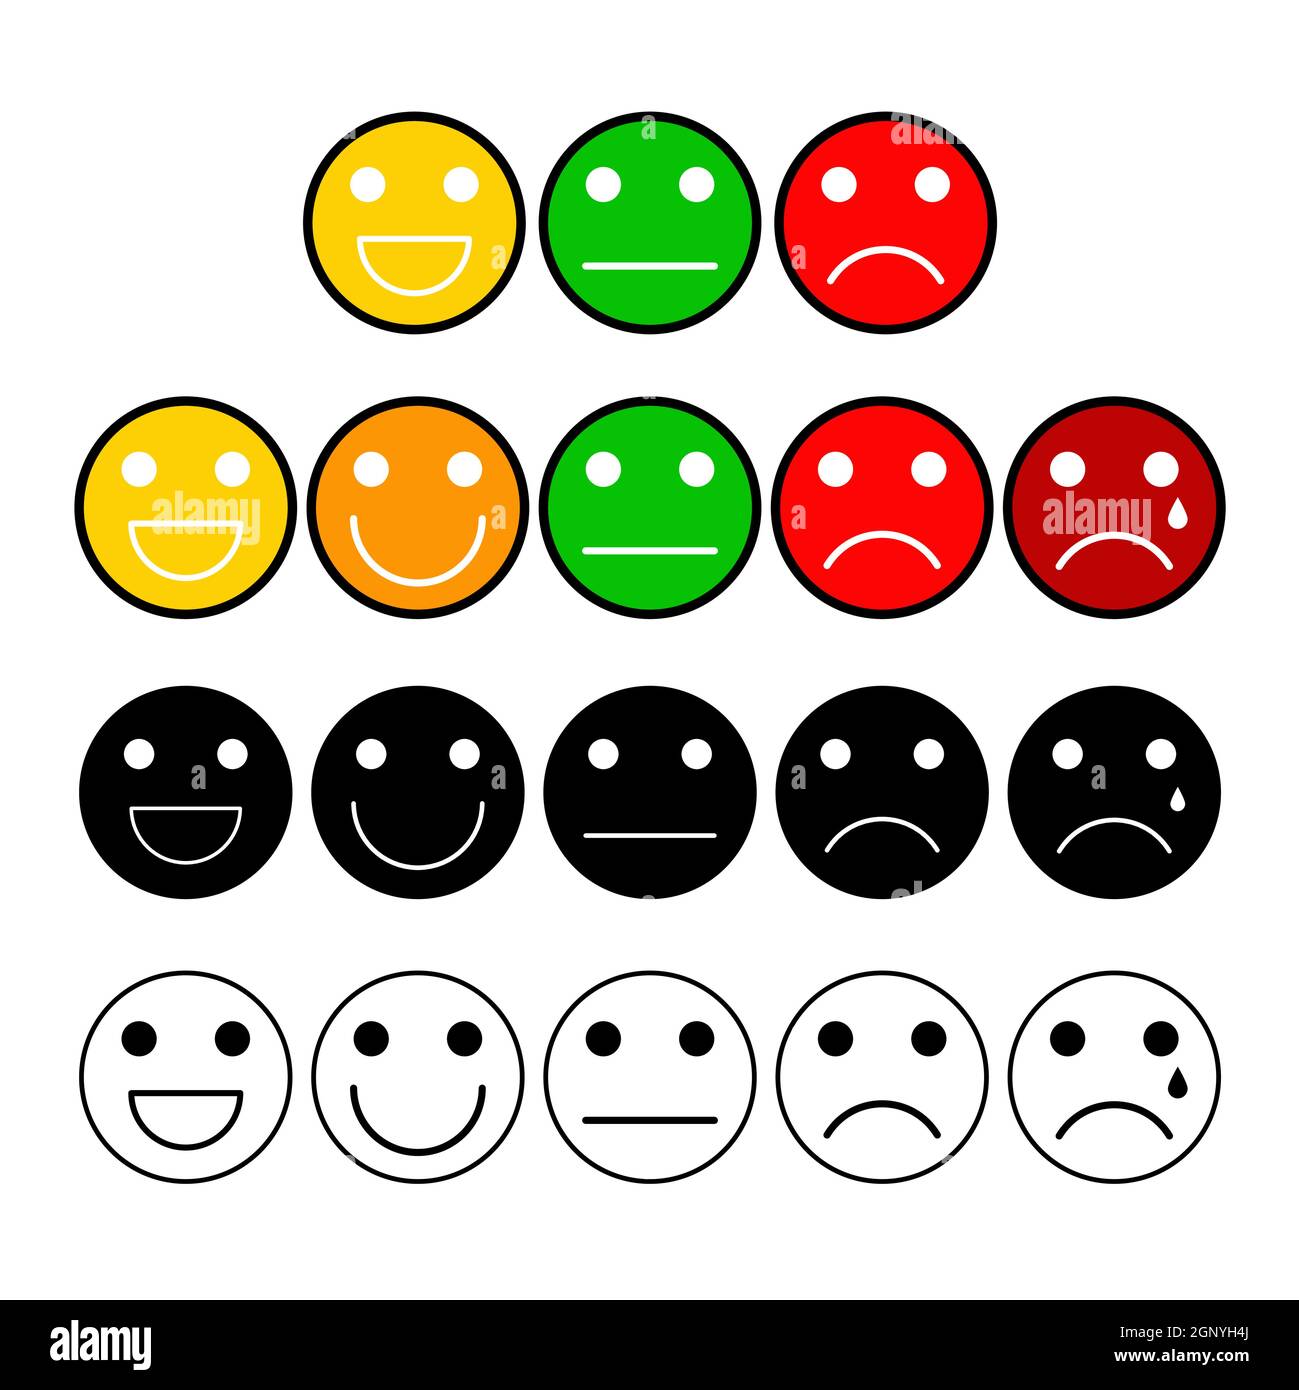 Schaltflächen für die Umfrage zur Kundenmeinung sind gesetzt. Stimmungsgrad mit Emoji-Gesicht. Symbole auf der Skala zur Messung der Kundenzufriedenheit. Vektordarstellung auf weißem Hintergrund isoliert. Stock Vektor